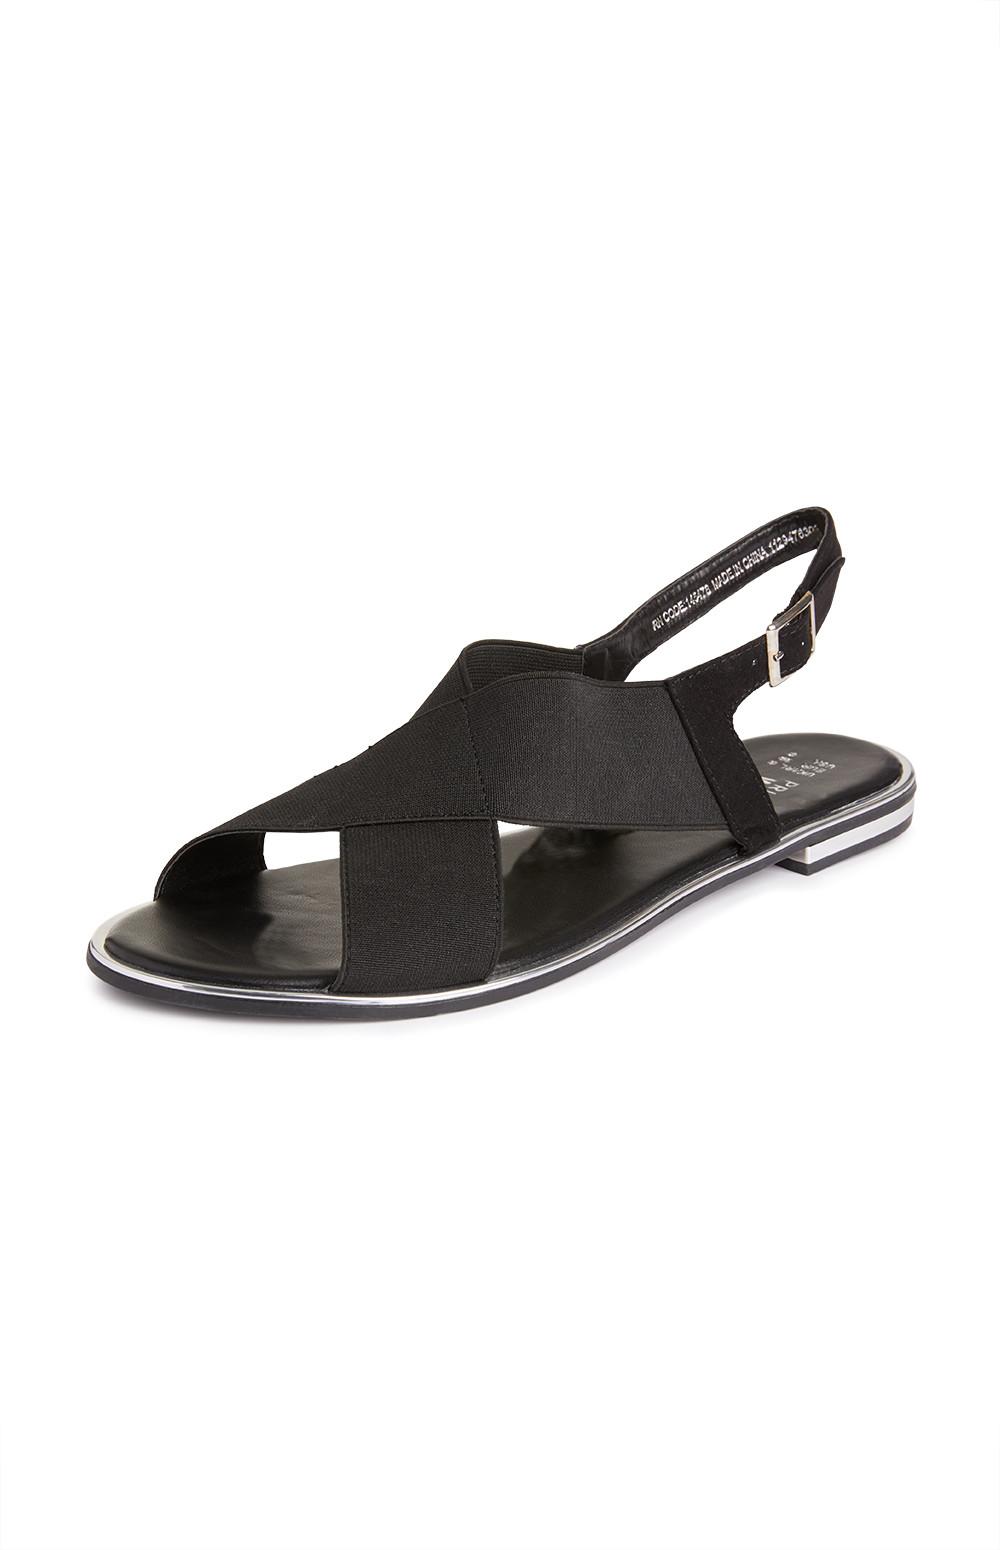 primark sandals black